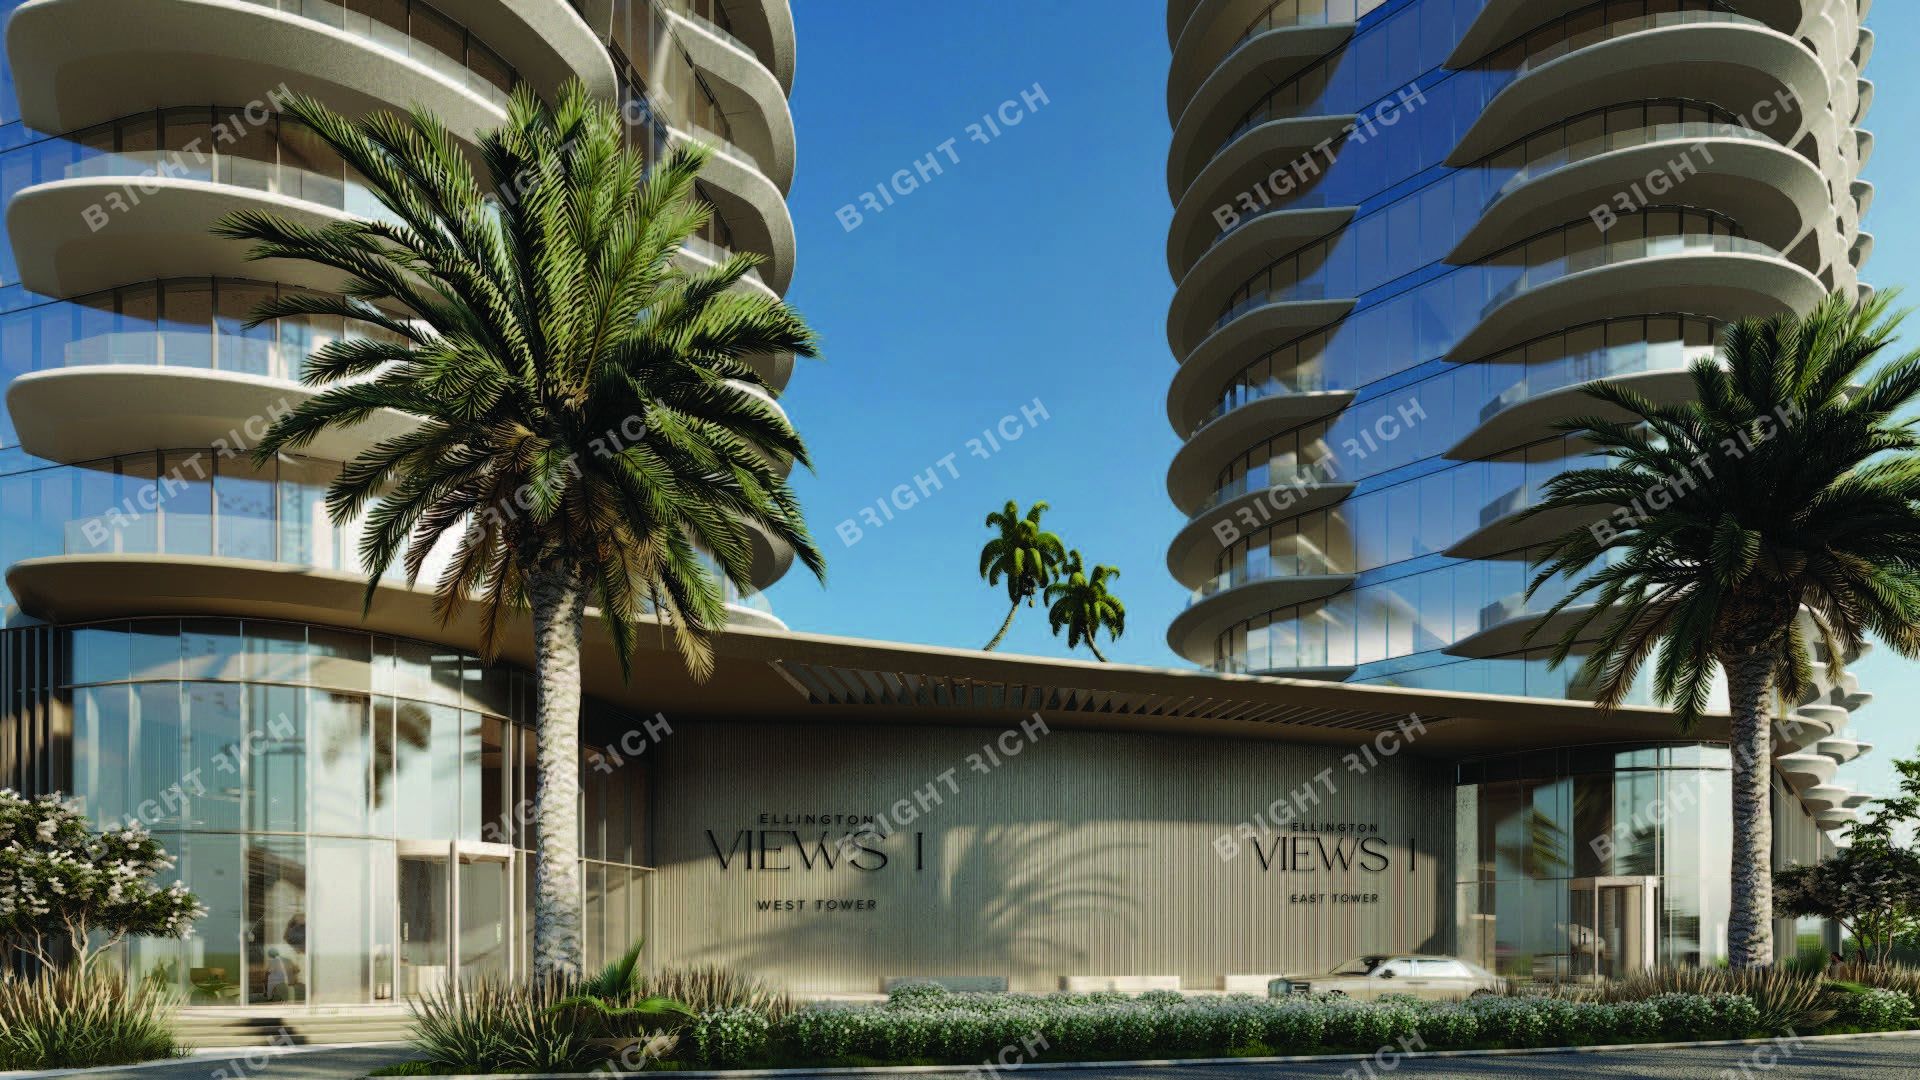 Ellington Views I West Tower, apart complex in Ras Al Khaimah - 1